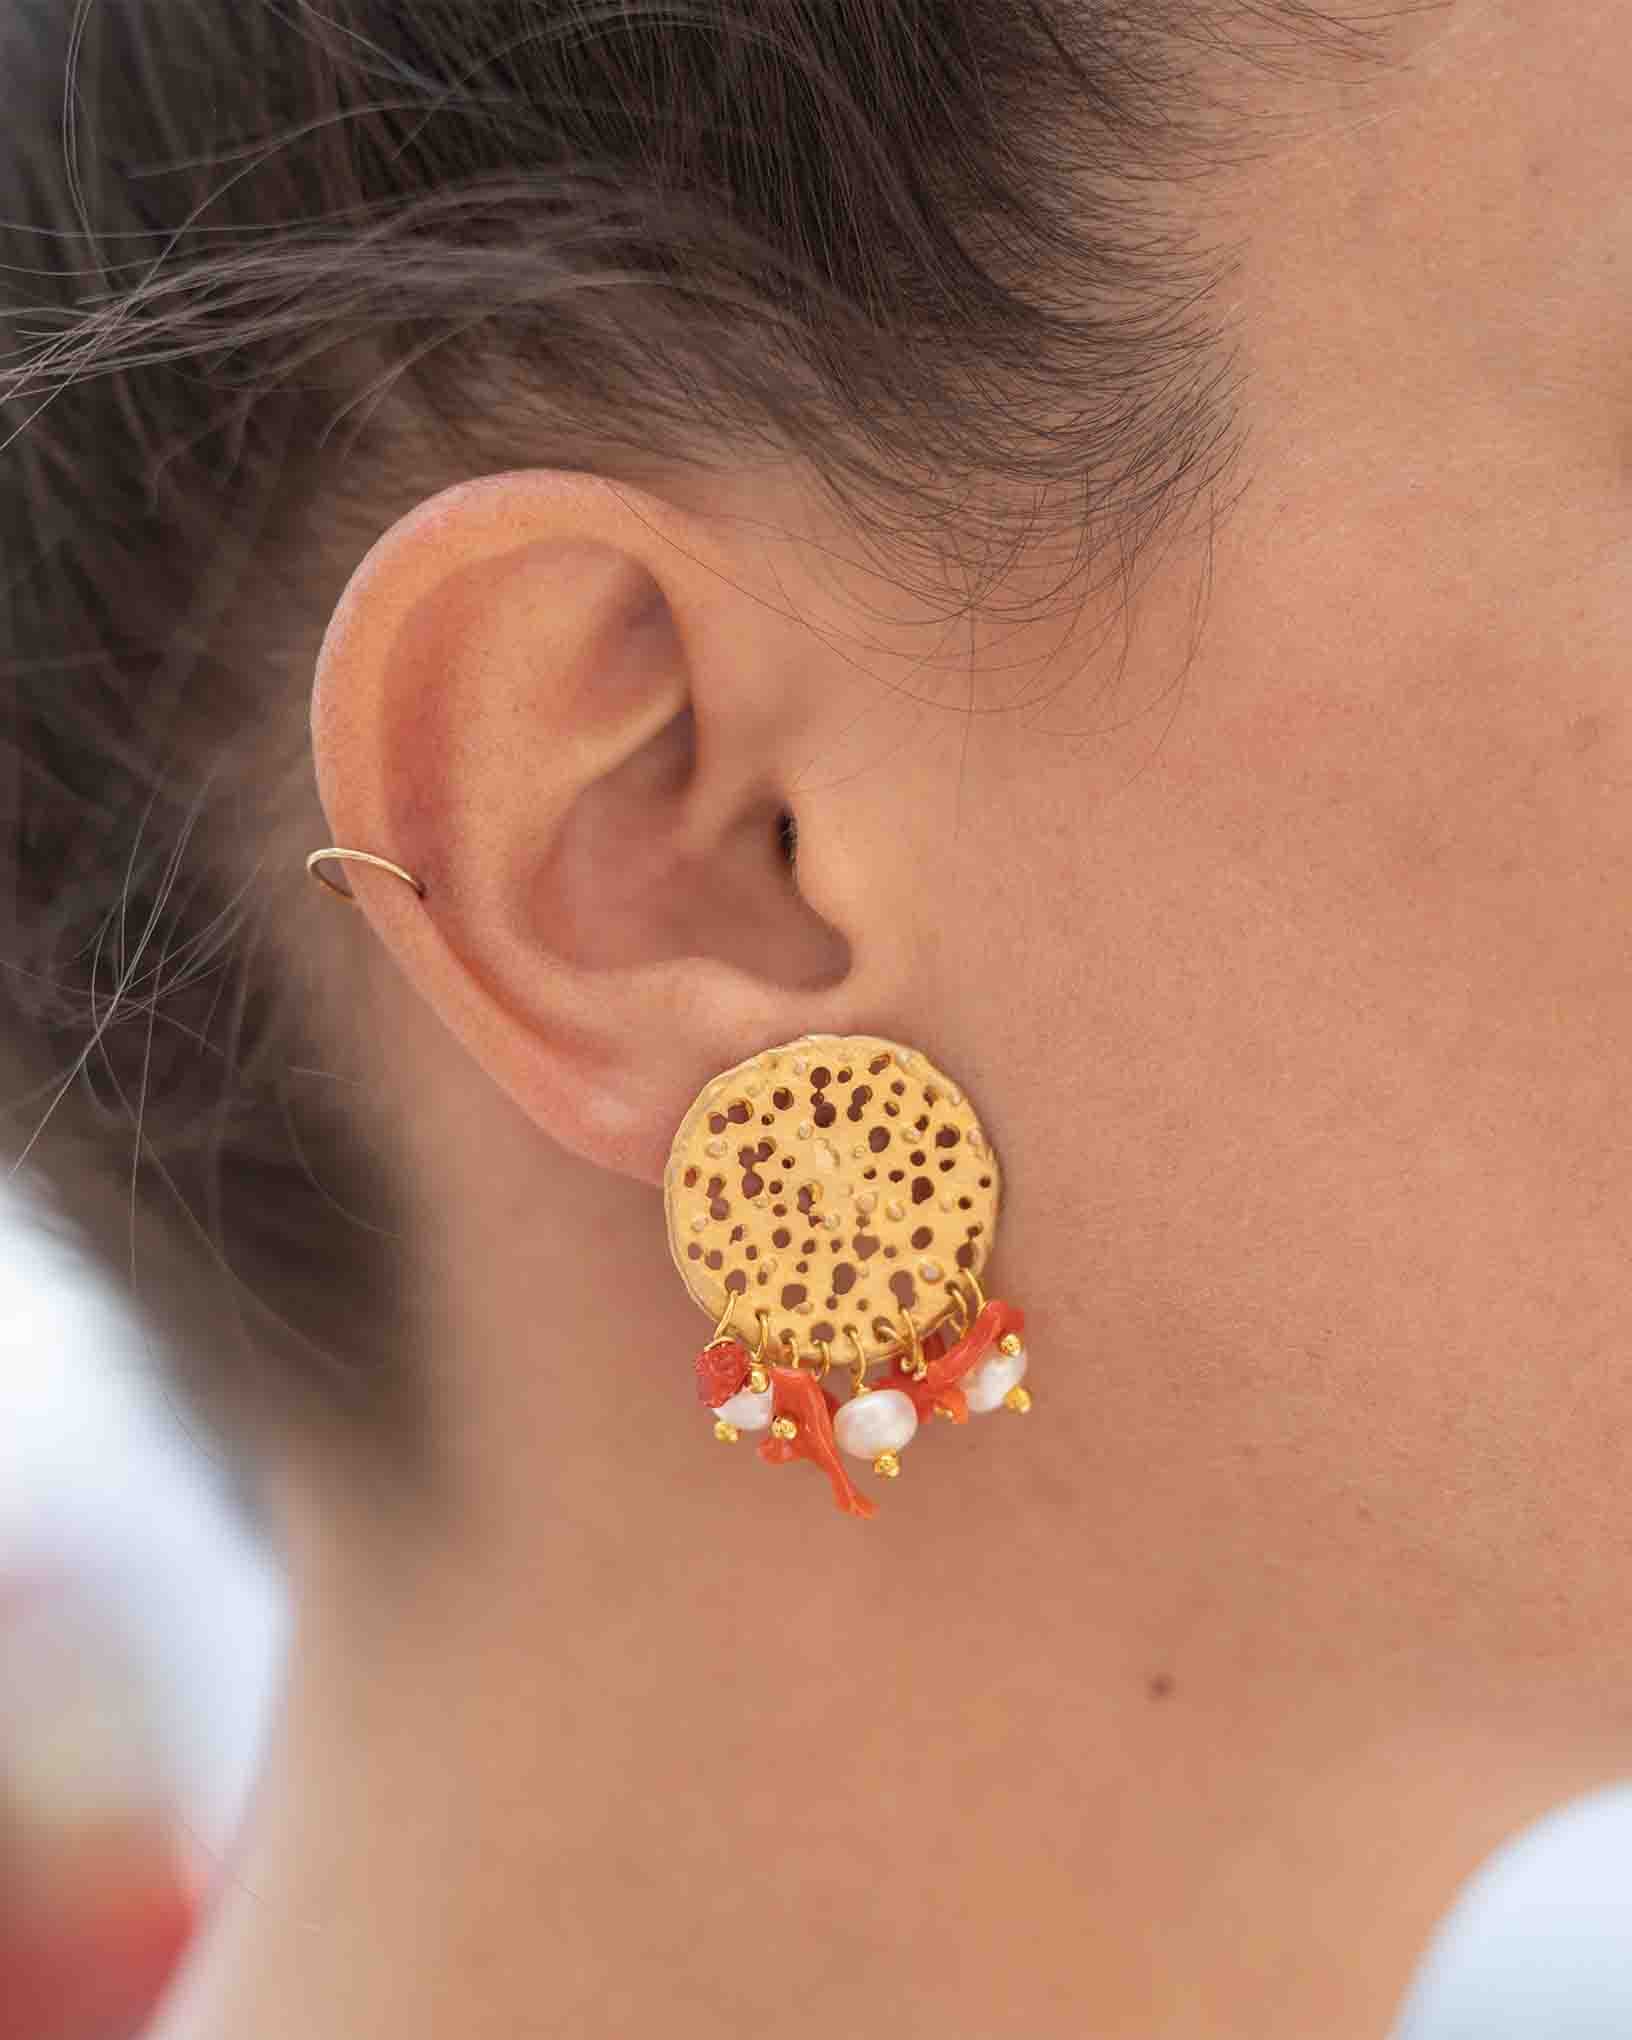 Ohrring Scirocco aus der Kollektion Perle e Coralli von Donna Rachele Jewelry